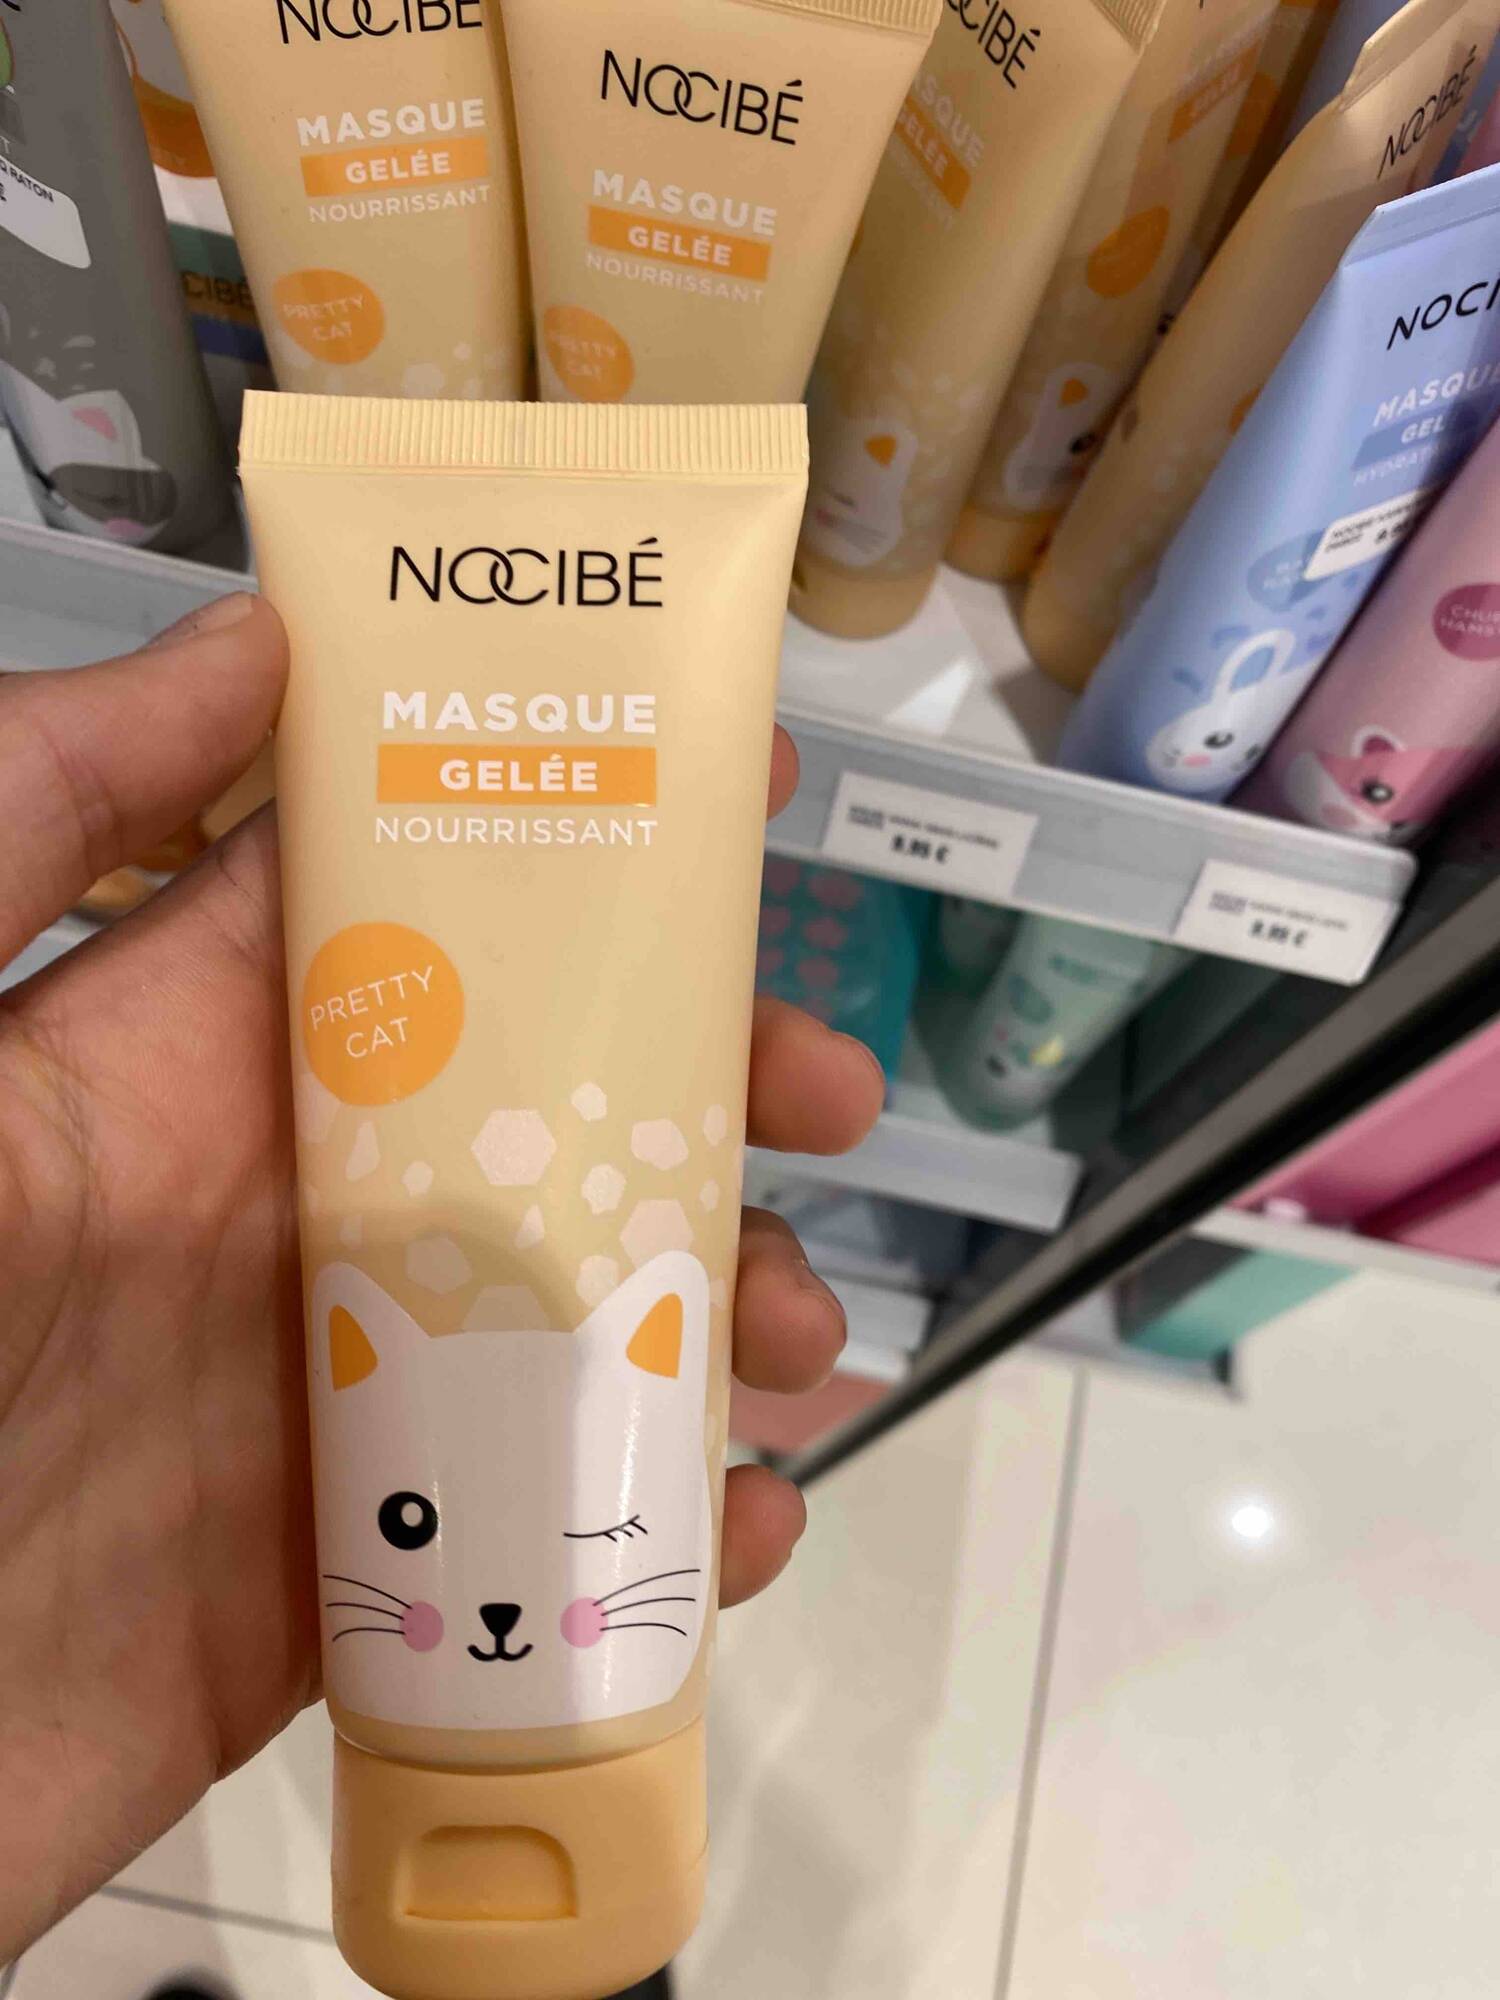 NOCIBÉ - Pretty cat - Masque gelée nourrissant 